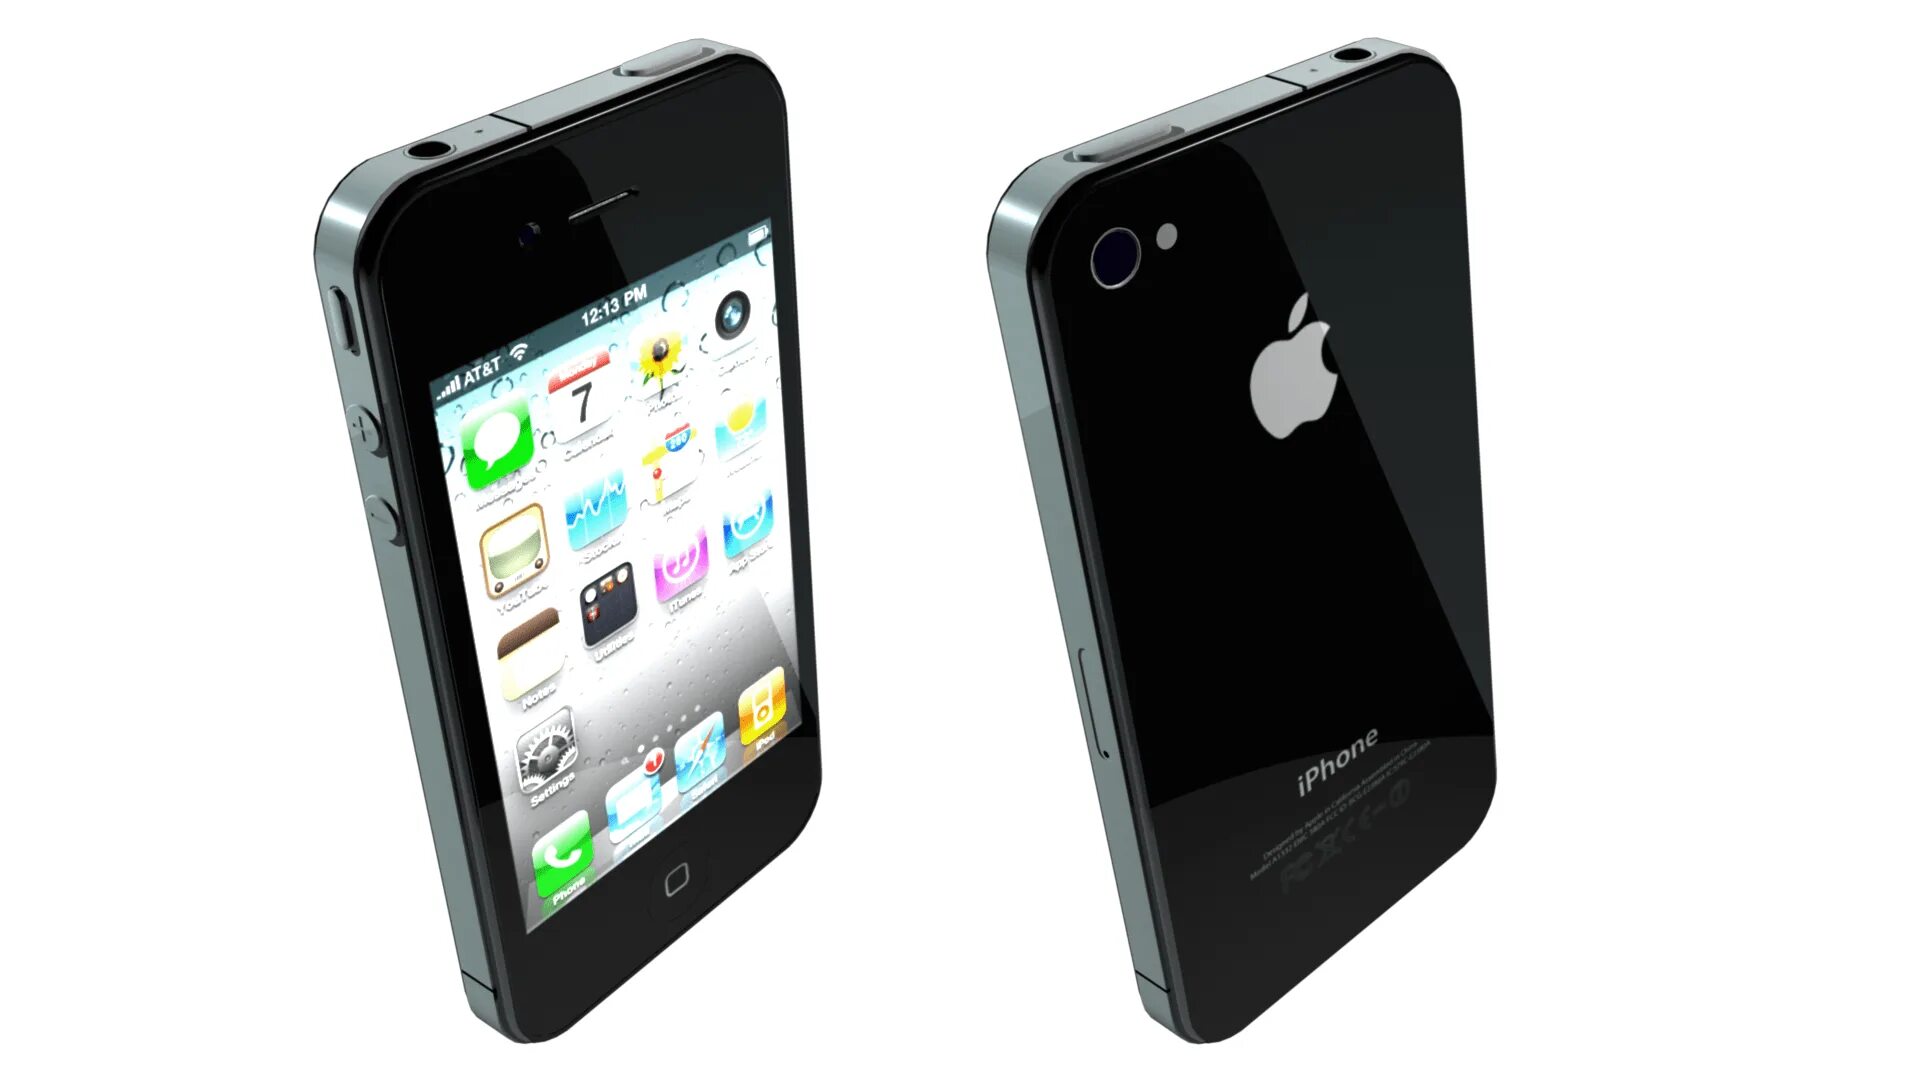 Картинки айфона 4. Iphone 4s. Iphone 4 и 4s. Apple iphone 4s. Iphone 4 2010.